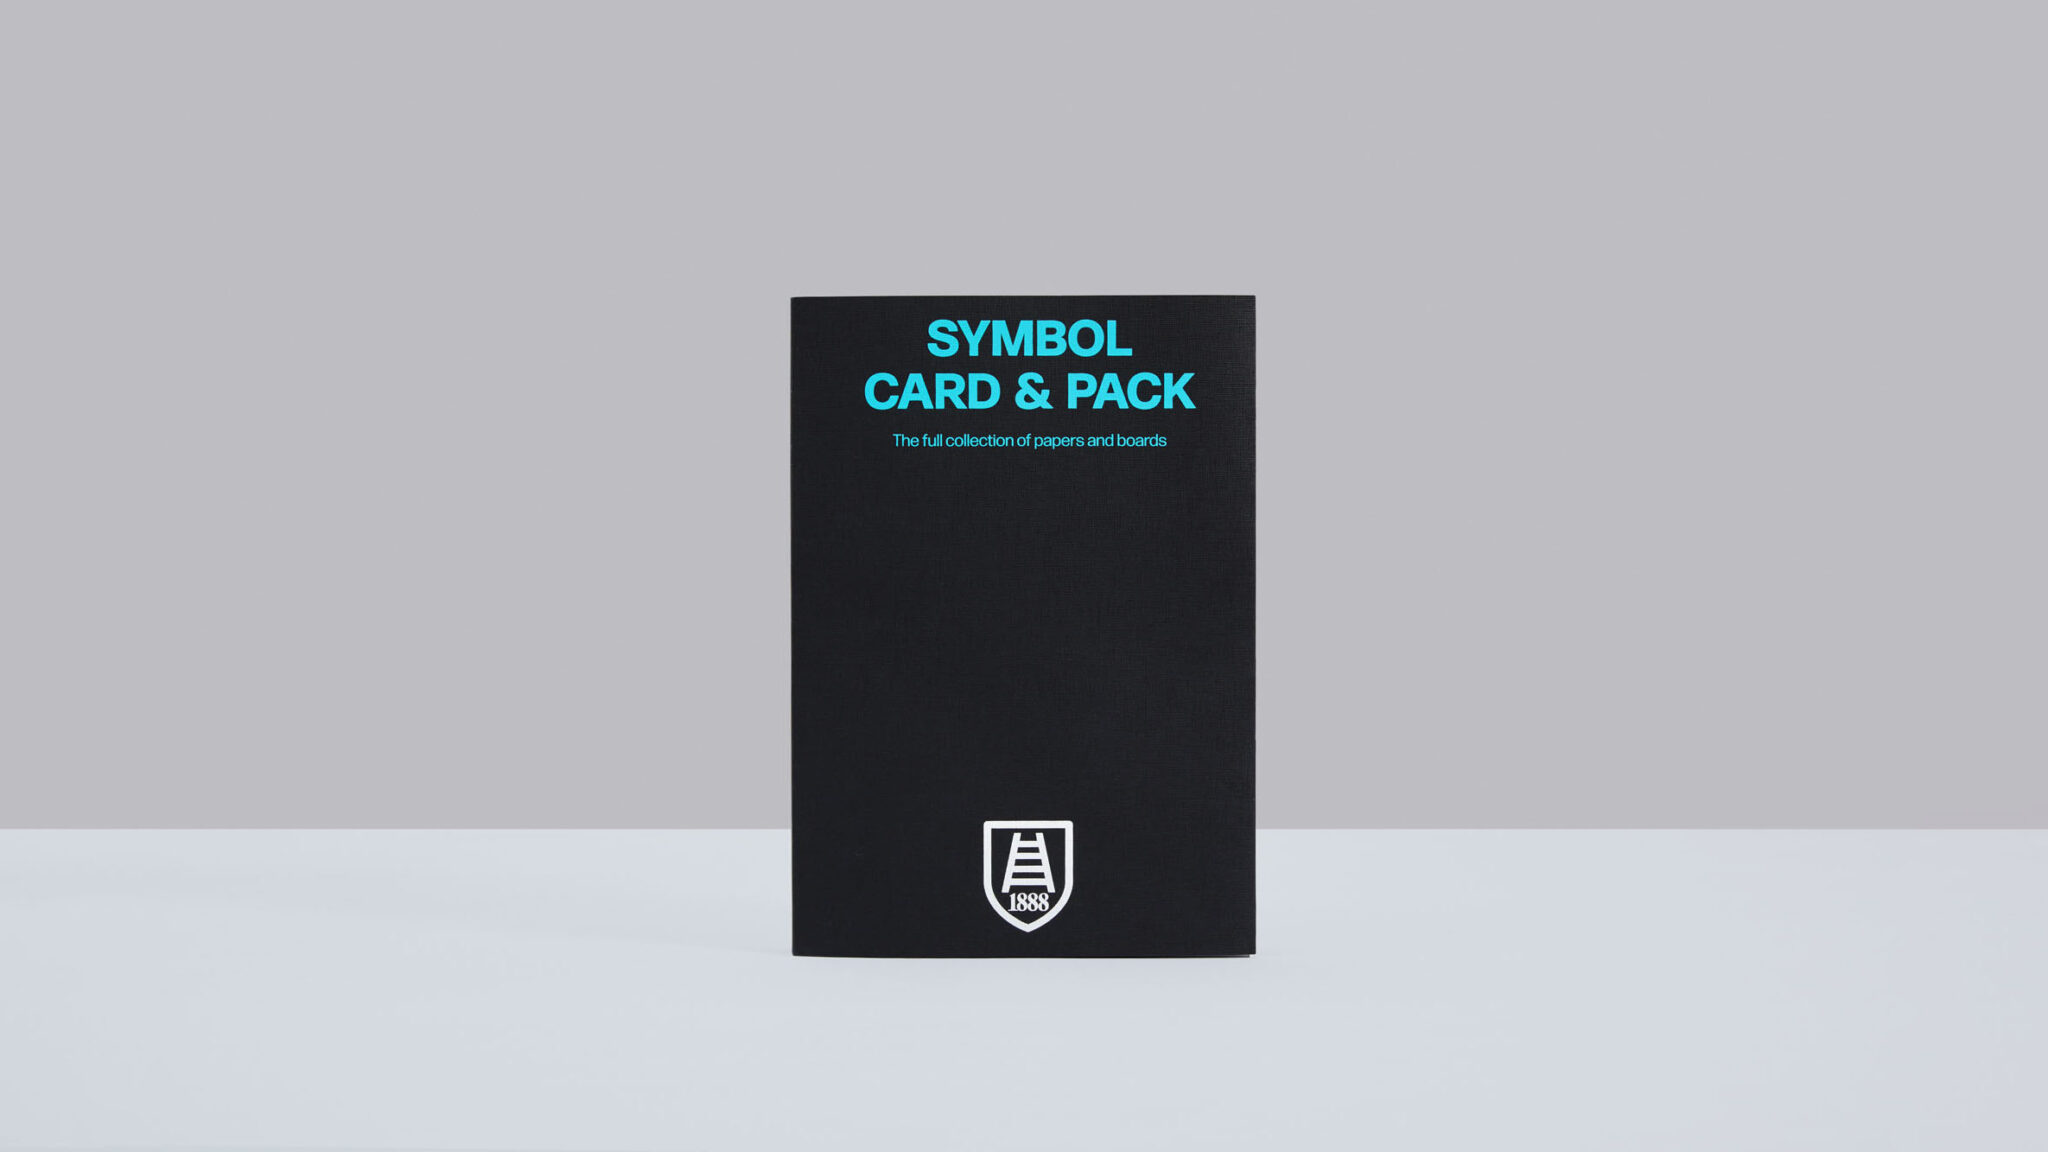 L’intera gamma Symbol Card & Pack disponibile nel nuovo campionario